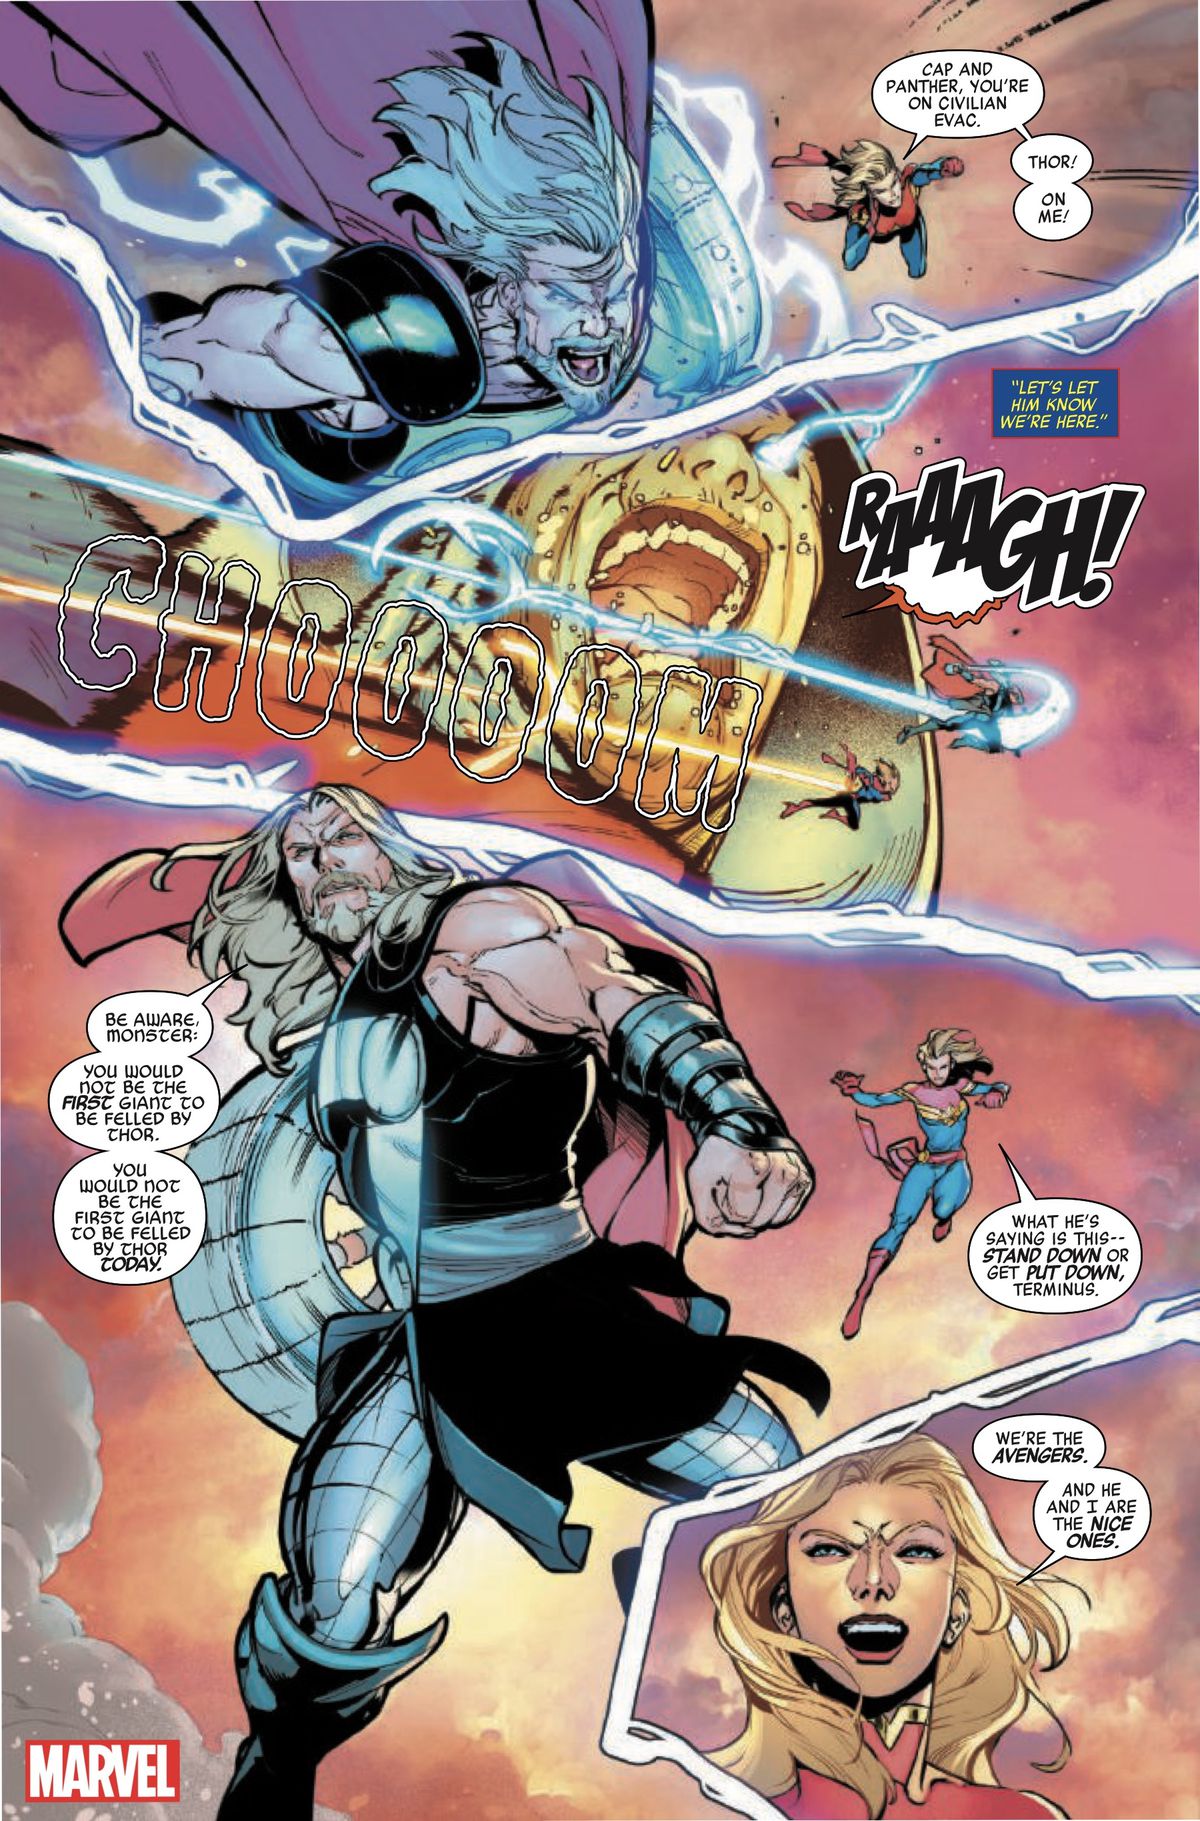 Kapten Marvel och Thor slåss mot det enorma monstret och slår det med ljus.  